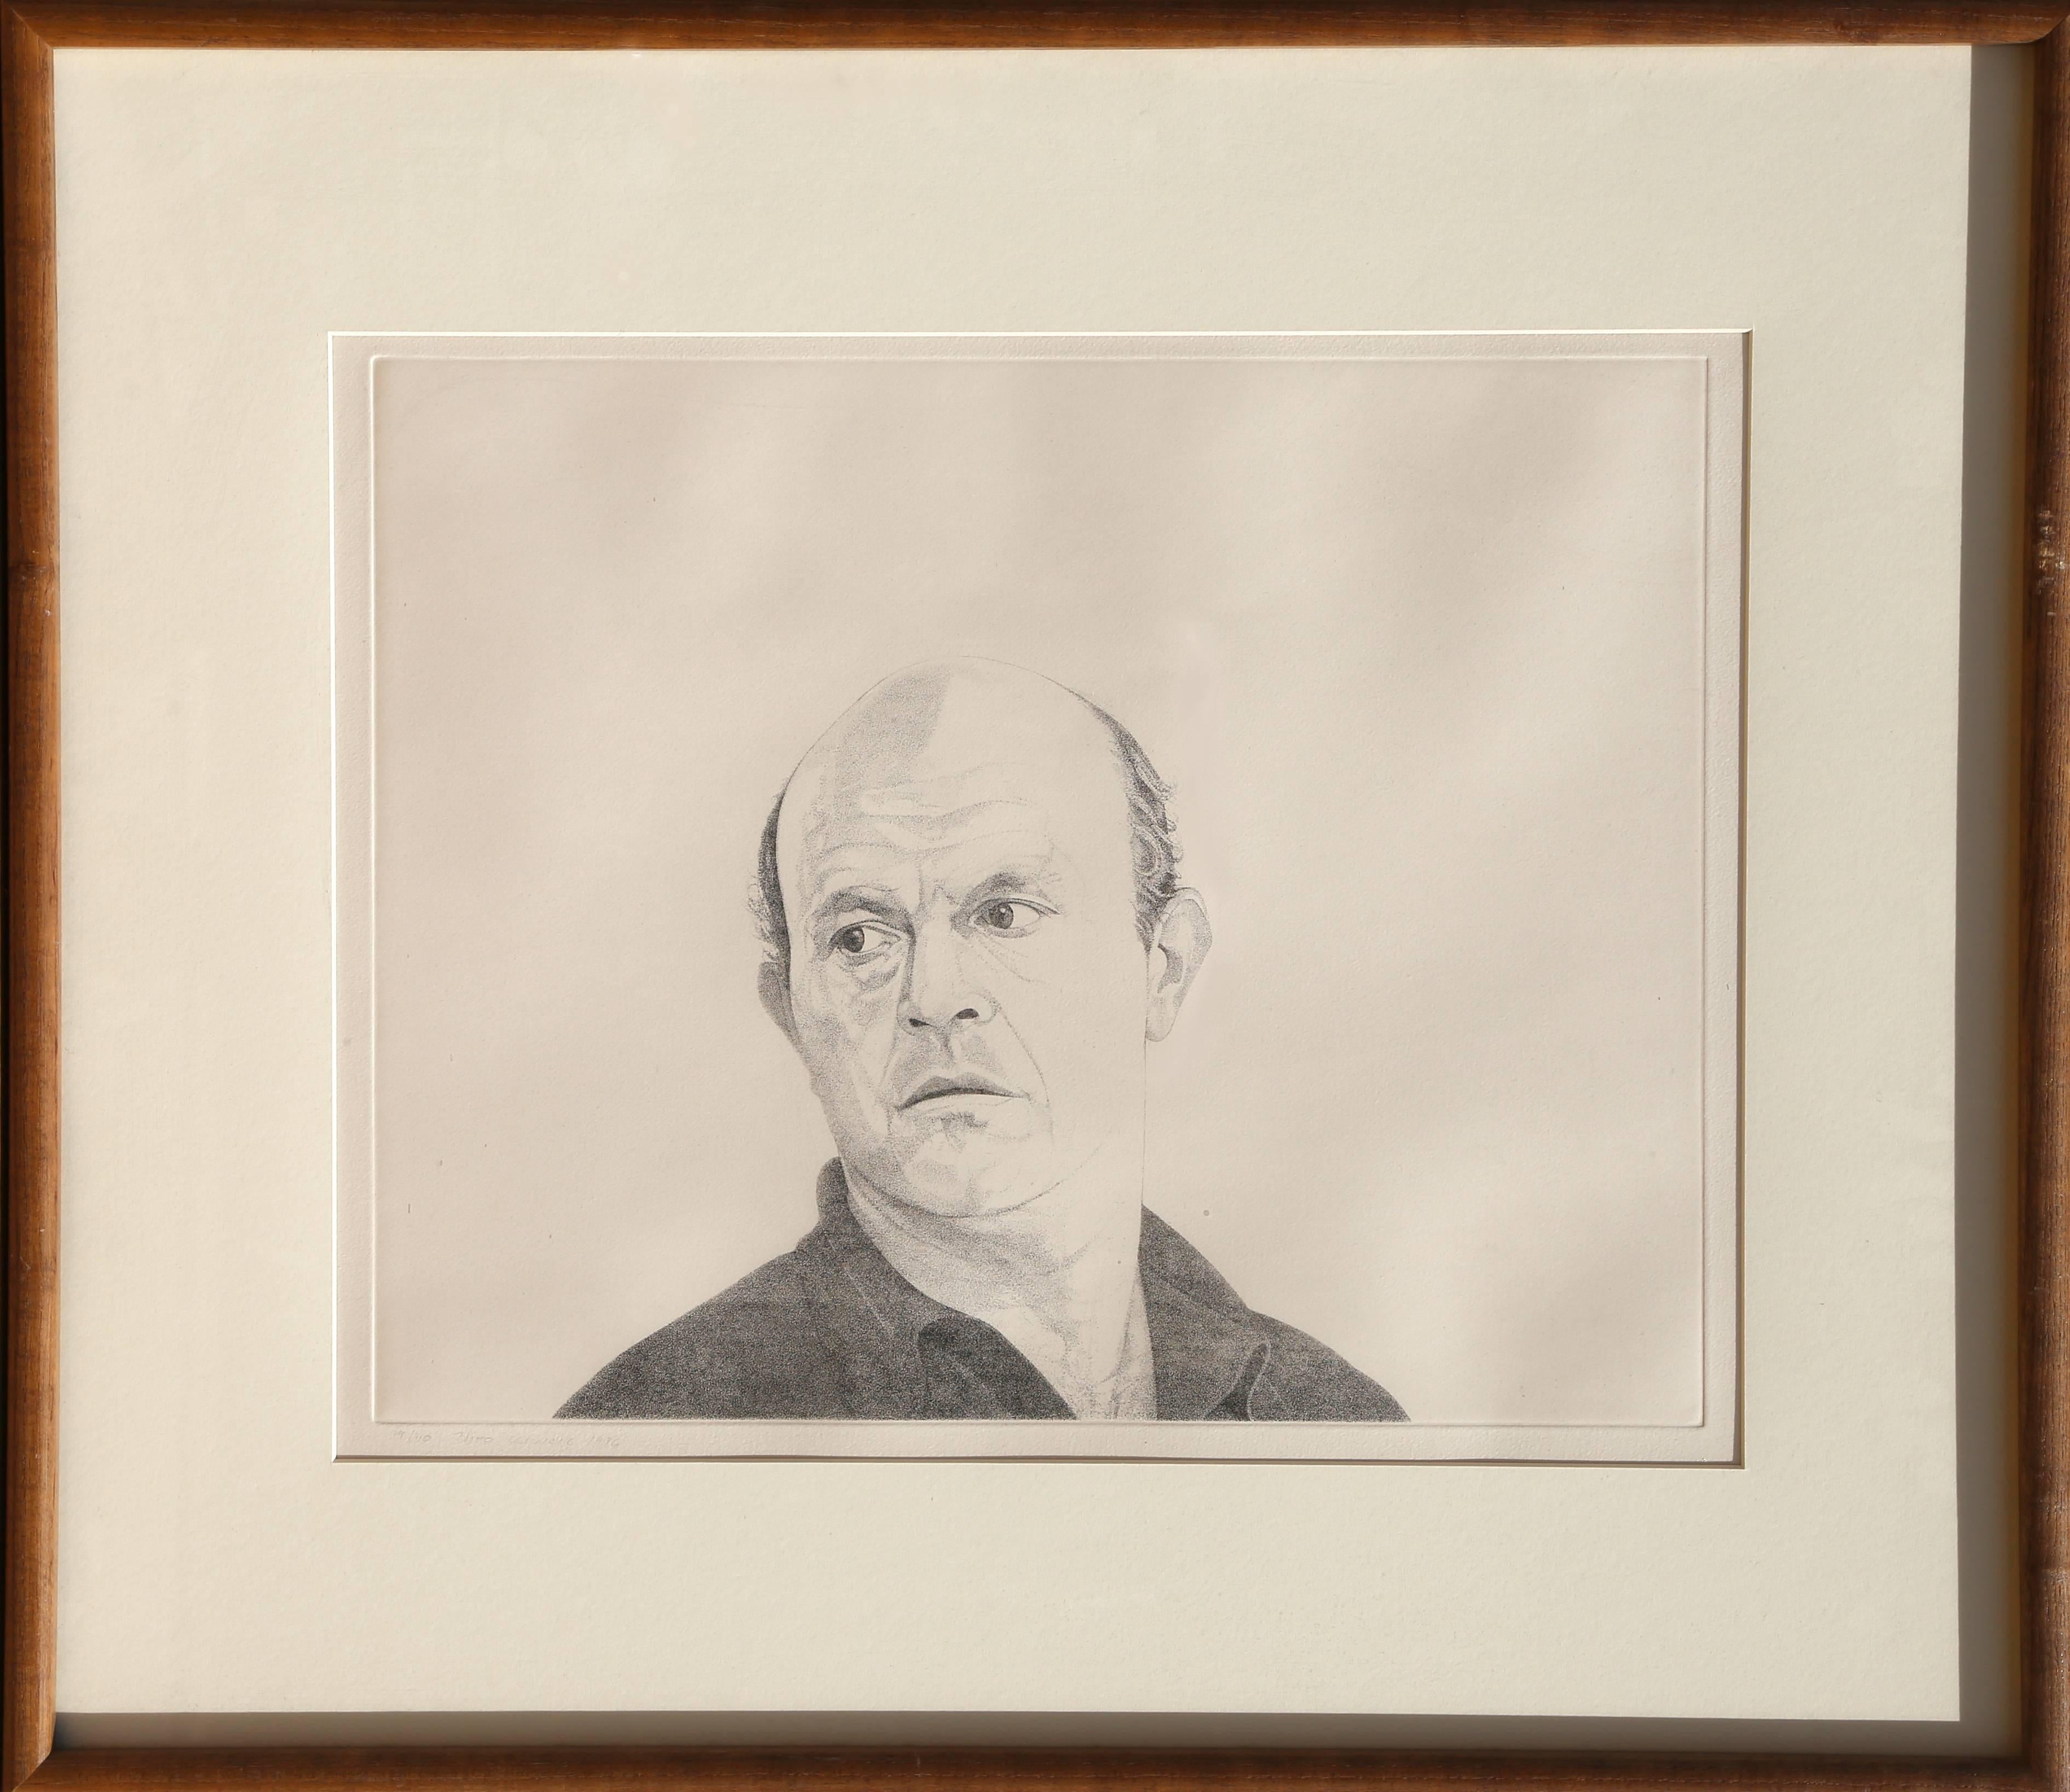 Künstler: Theo Wujcik, Amerikaner (1936 - 2014)
Titel: Jim Dine aus der Mentoren-Serie
Jahr: 1976
Medium: Radierung, mit Bleistift signiert und nummeriert
Auflage: 40
Bildgröße: 16,5 x 21 Zoll
Rahmengröße: 28 x 32,5 Zoll